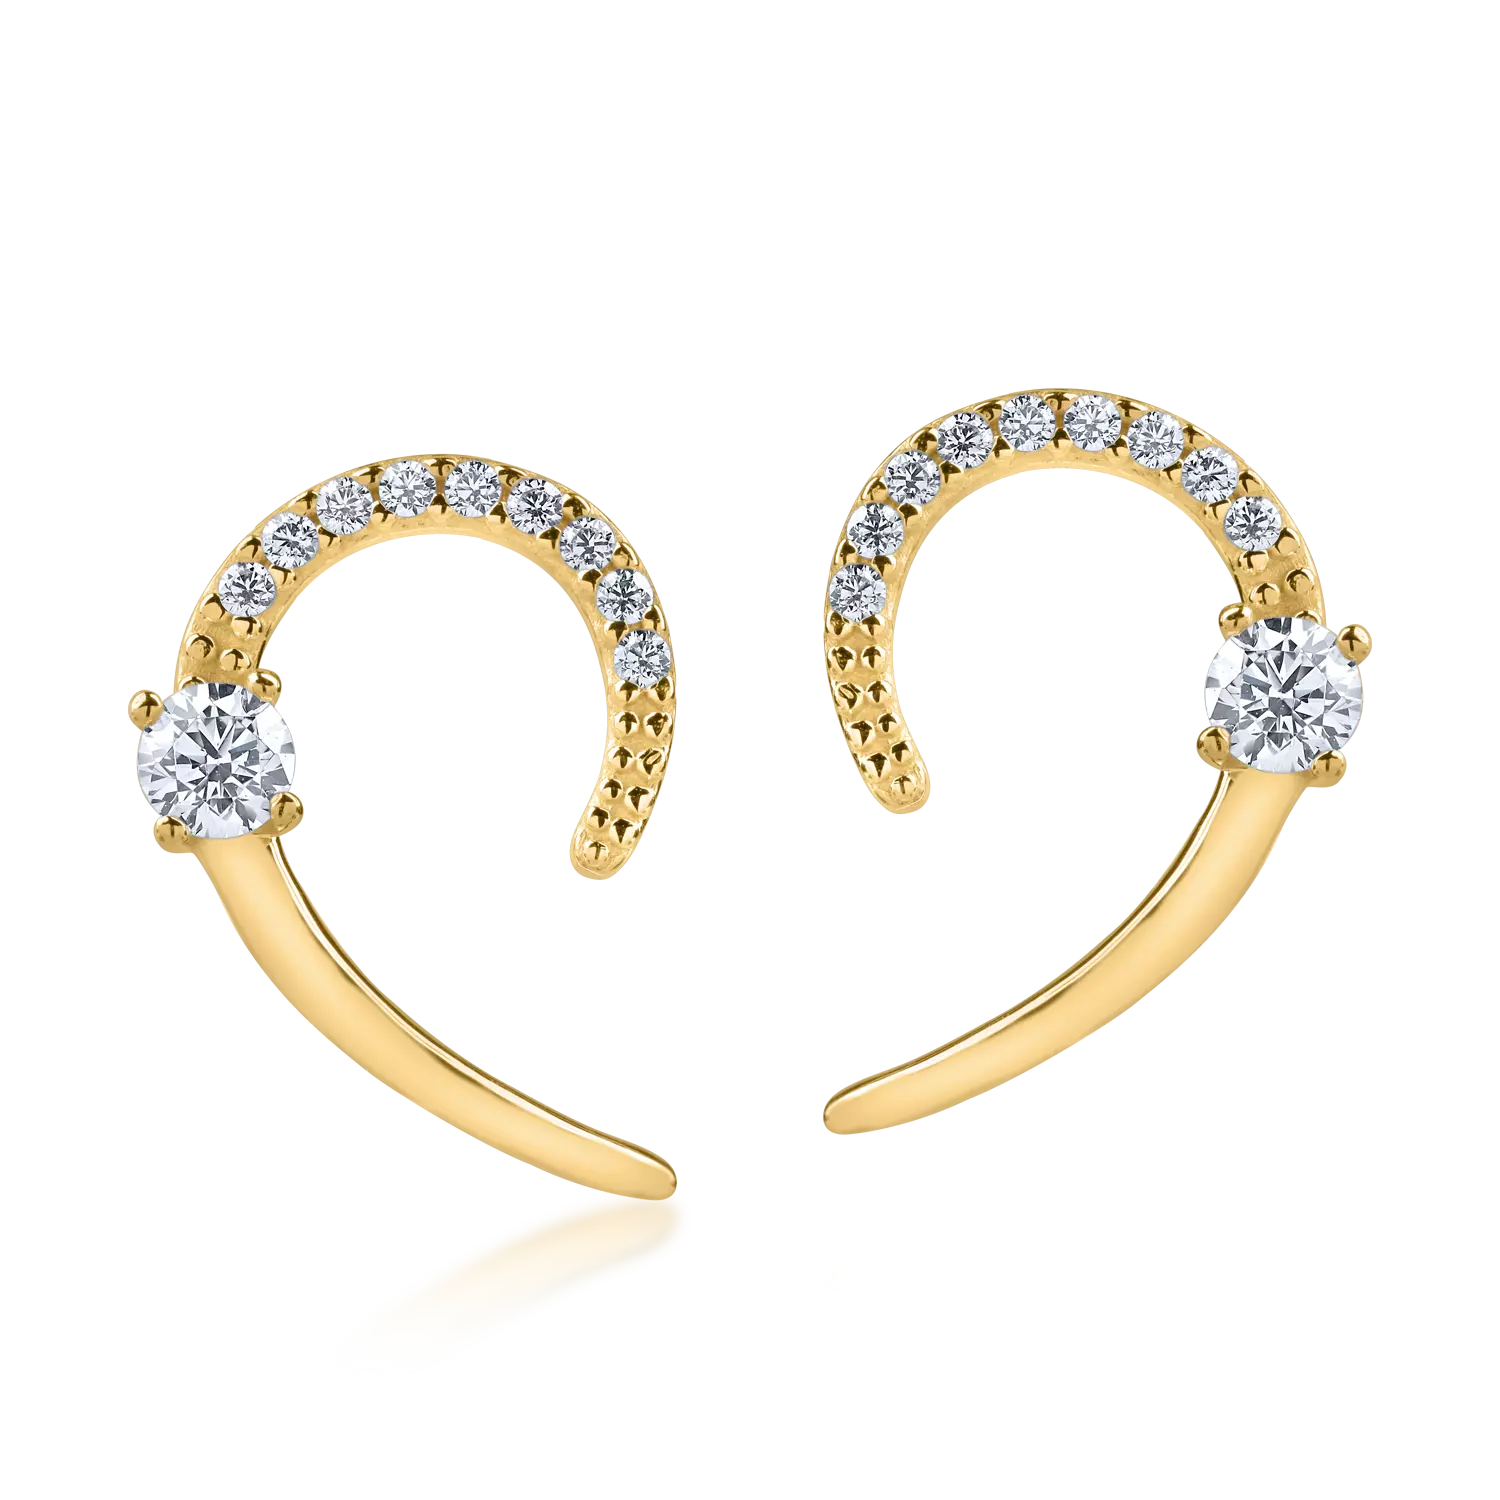 Yellow gold earrings with zirconia